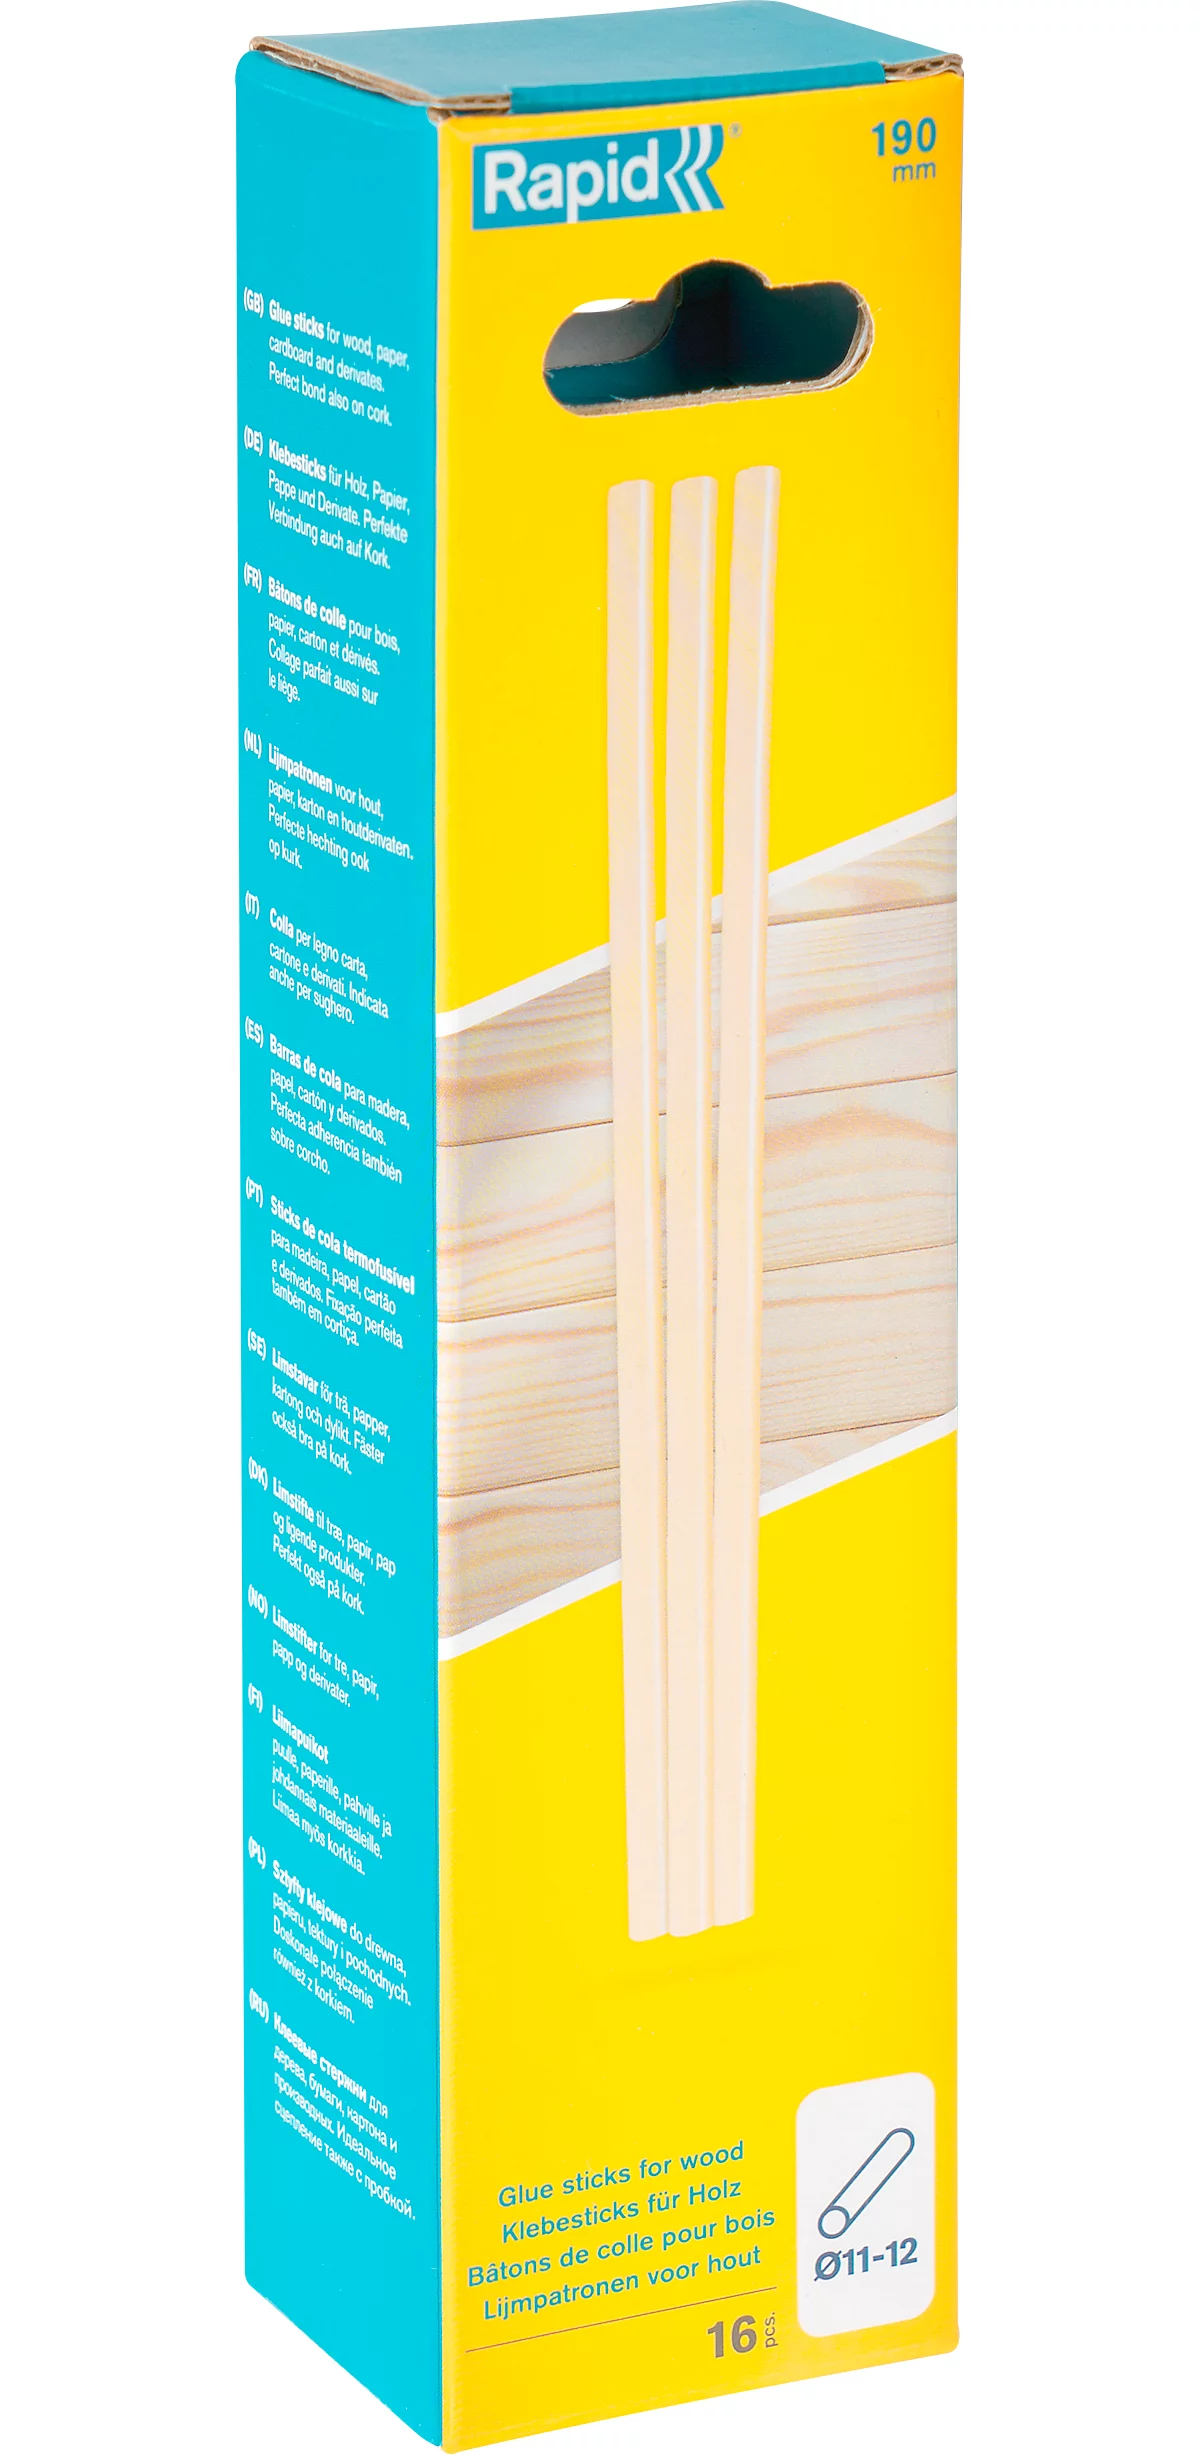 Rapid Klebesticks Holz, 12 x 190 mm, transparent, lösemittelfrei, 16 Stück